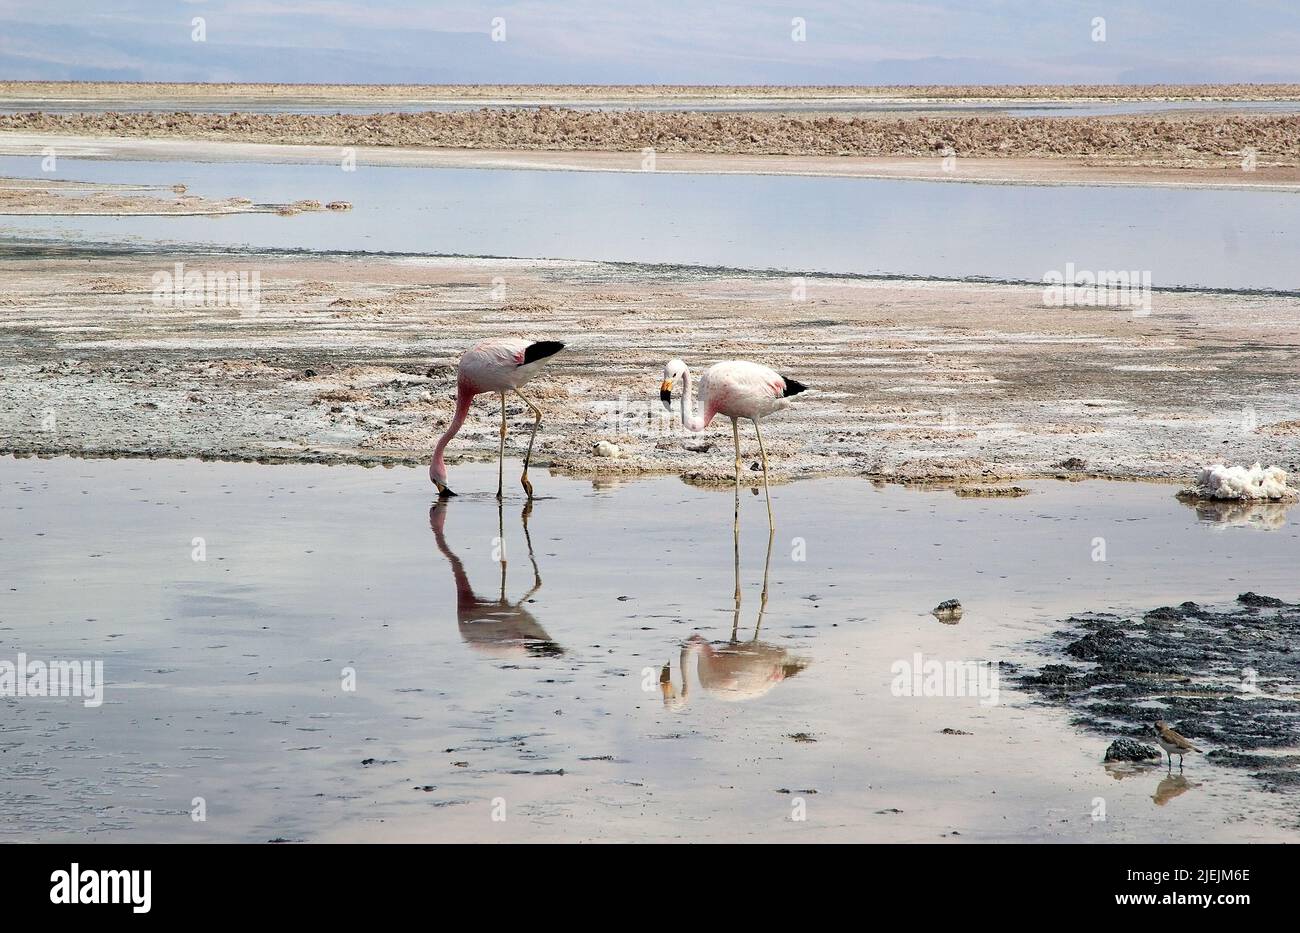 Los flamencos chilenos (Phoenicopterus chilensis) en la laguna Chaxa en el Salar de Atacama, Chile. El Salar de Atacama es el salar más grande de Chi Foto de stock